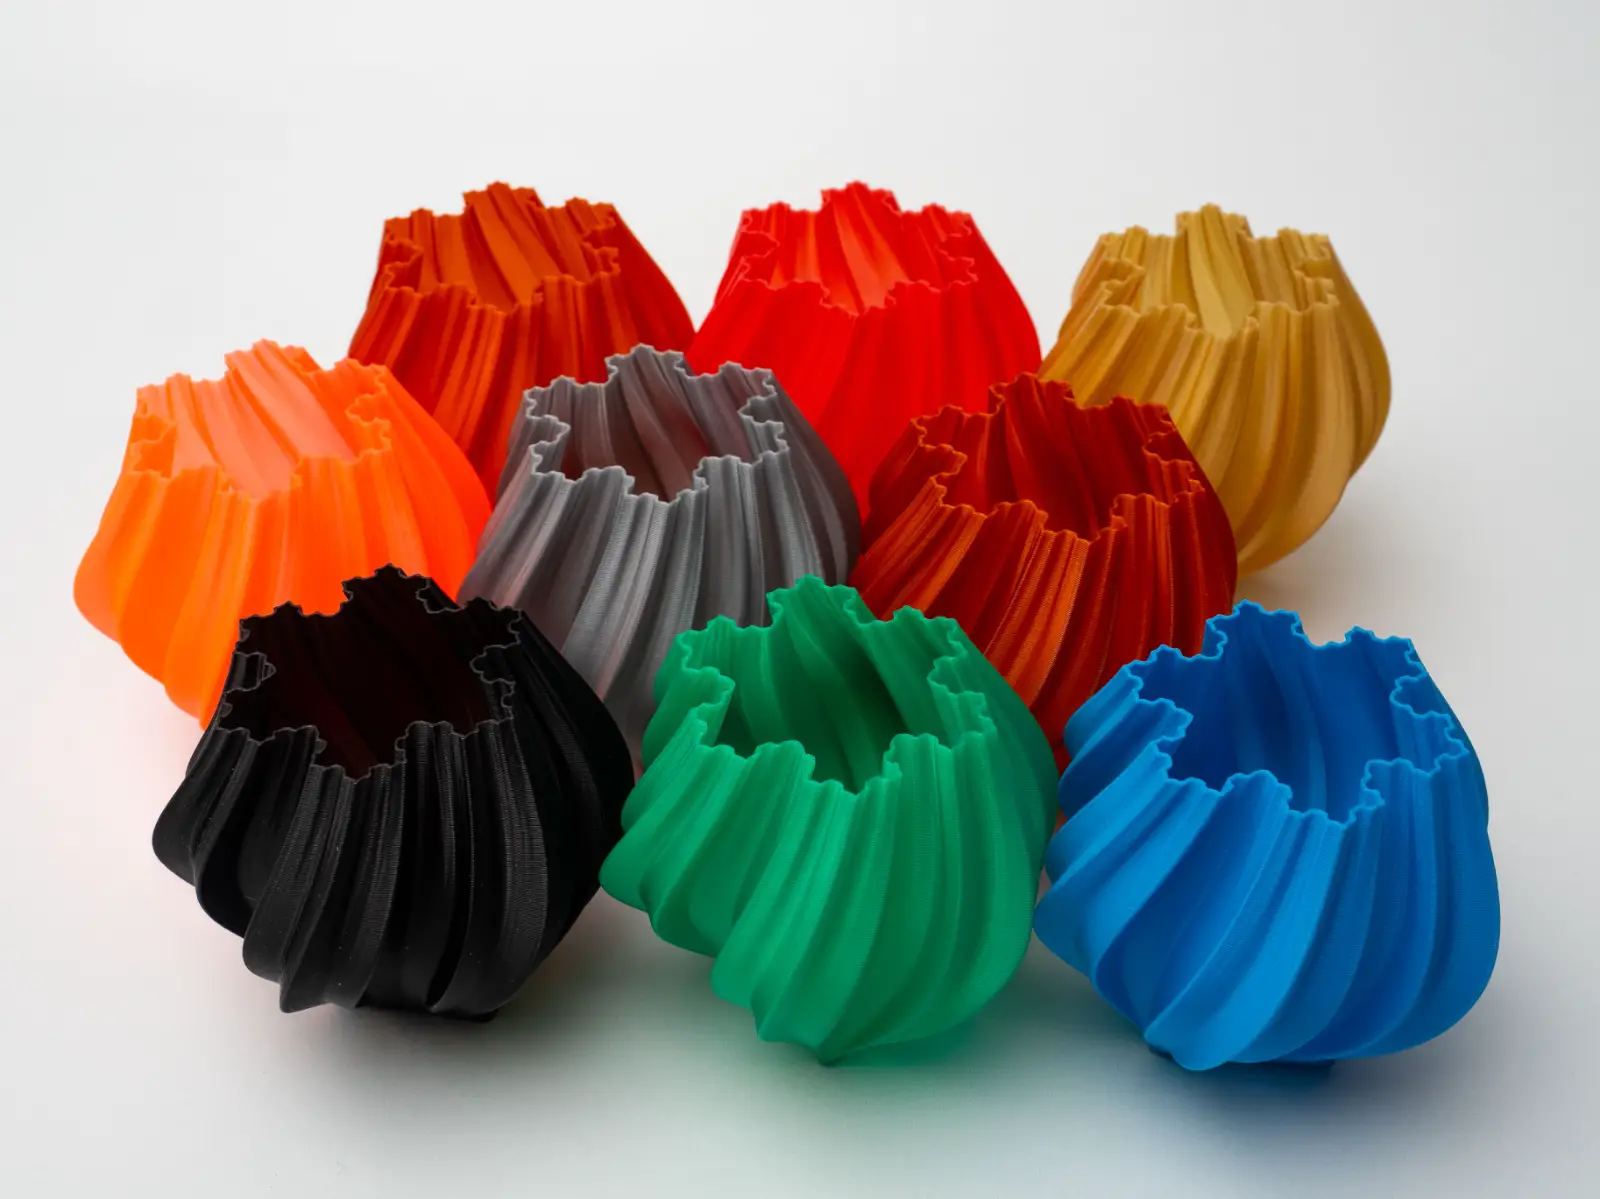 Meubles imprimés en 3D - l'avenir de la décoration d'intérieur